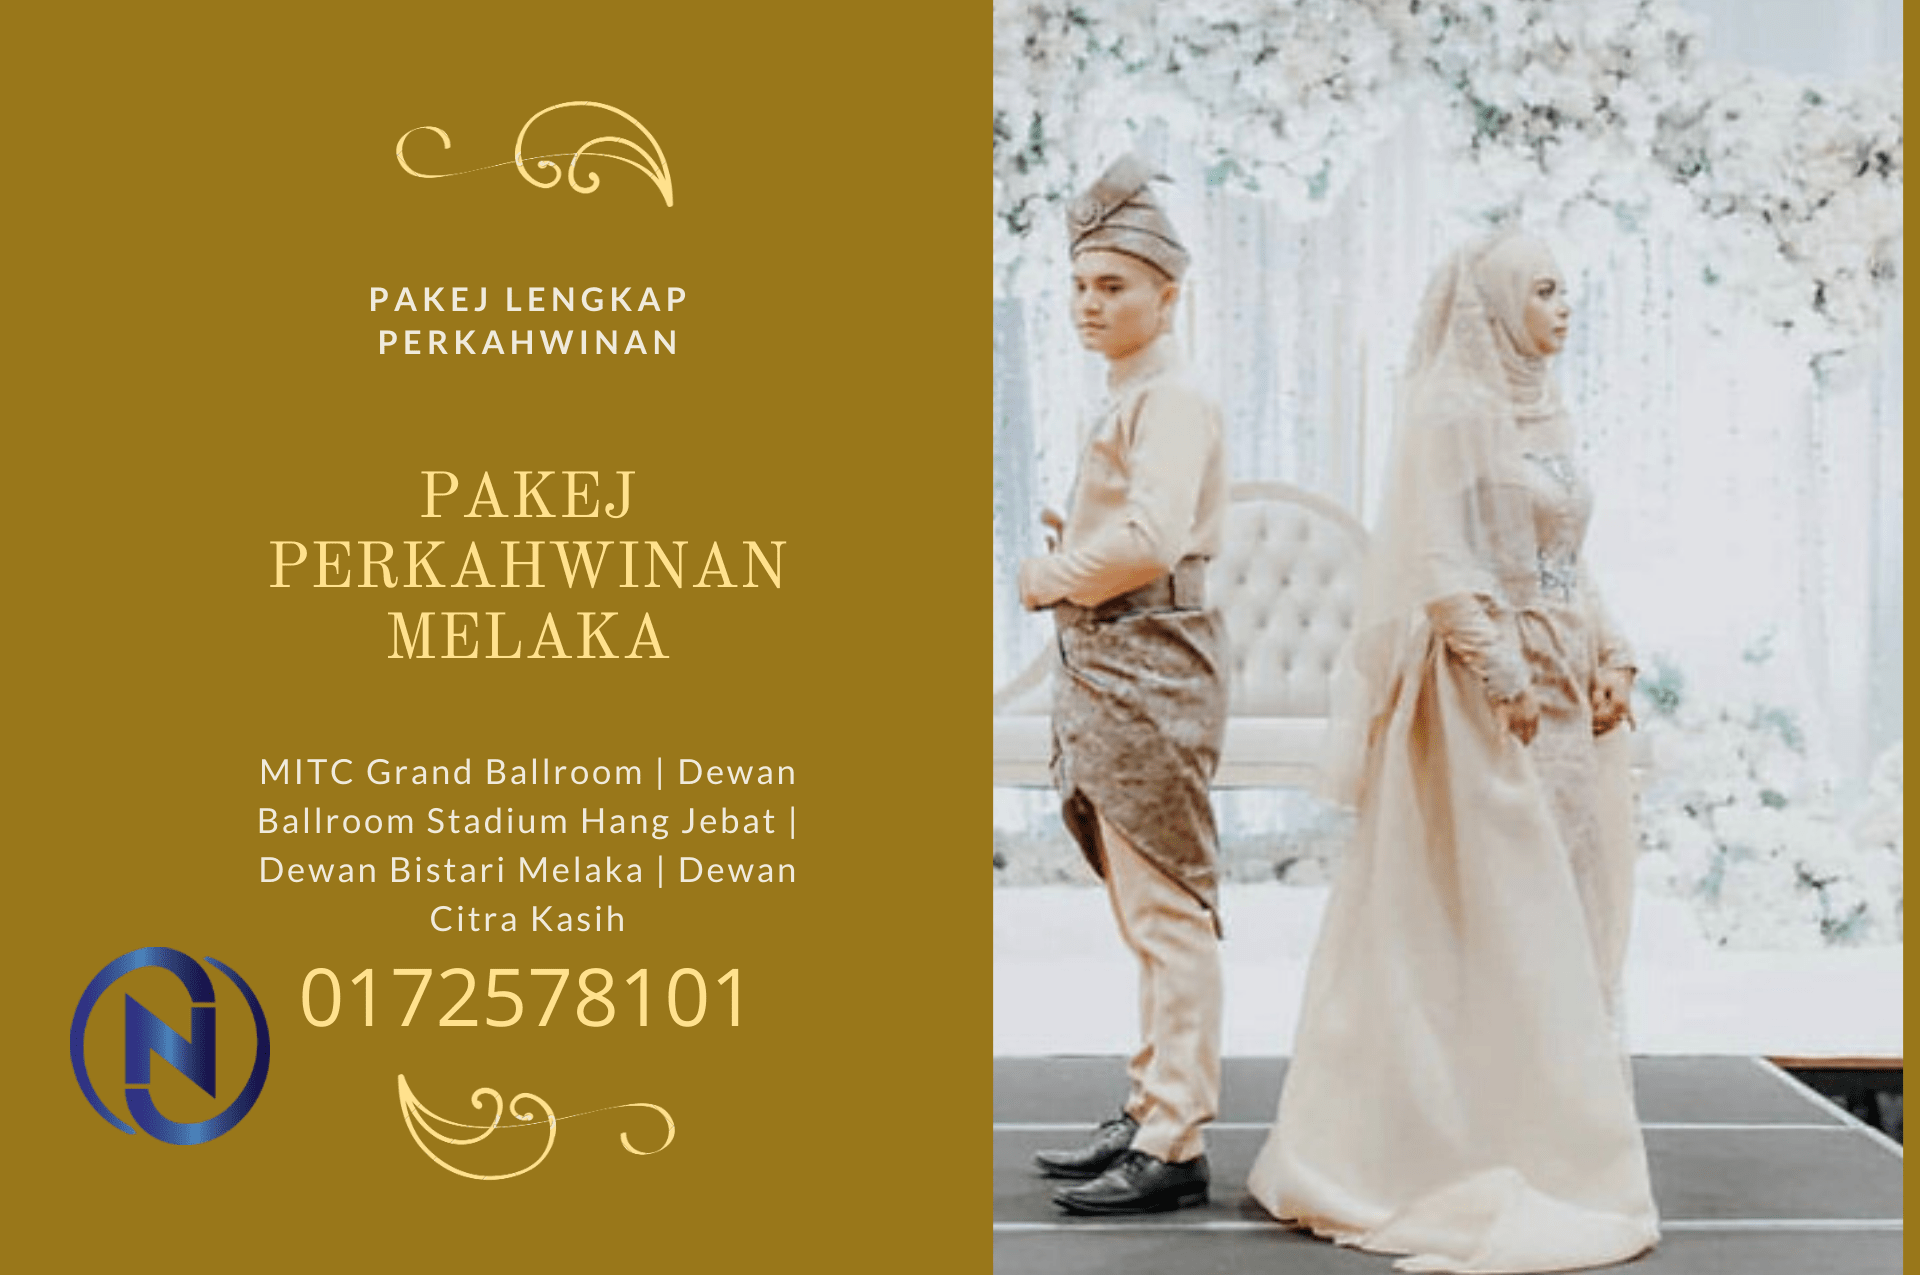 Pakej-Perkahwinan-Melaka-0172578101